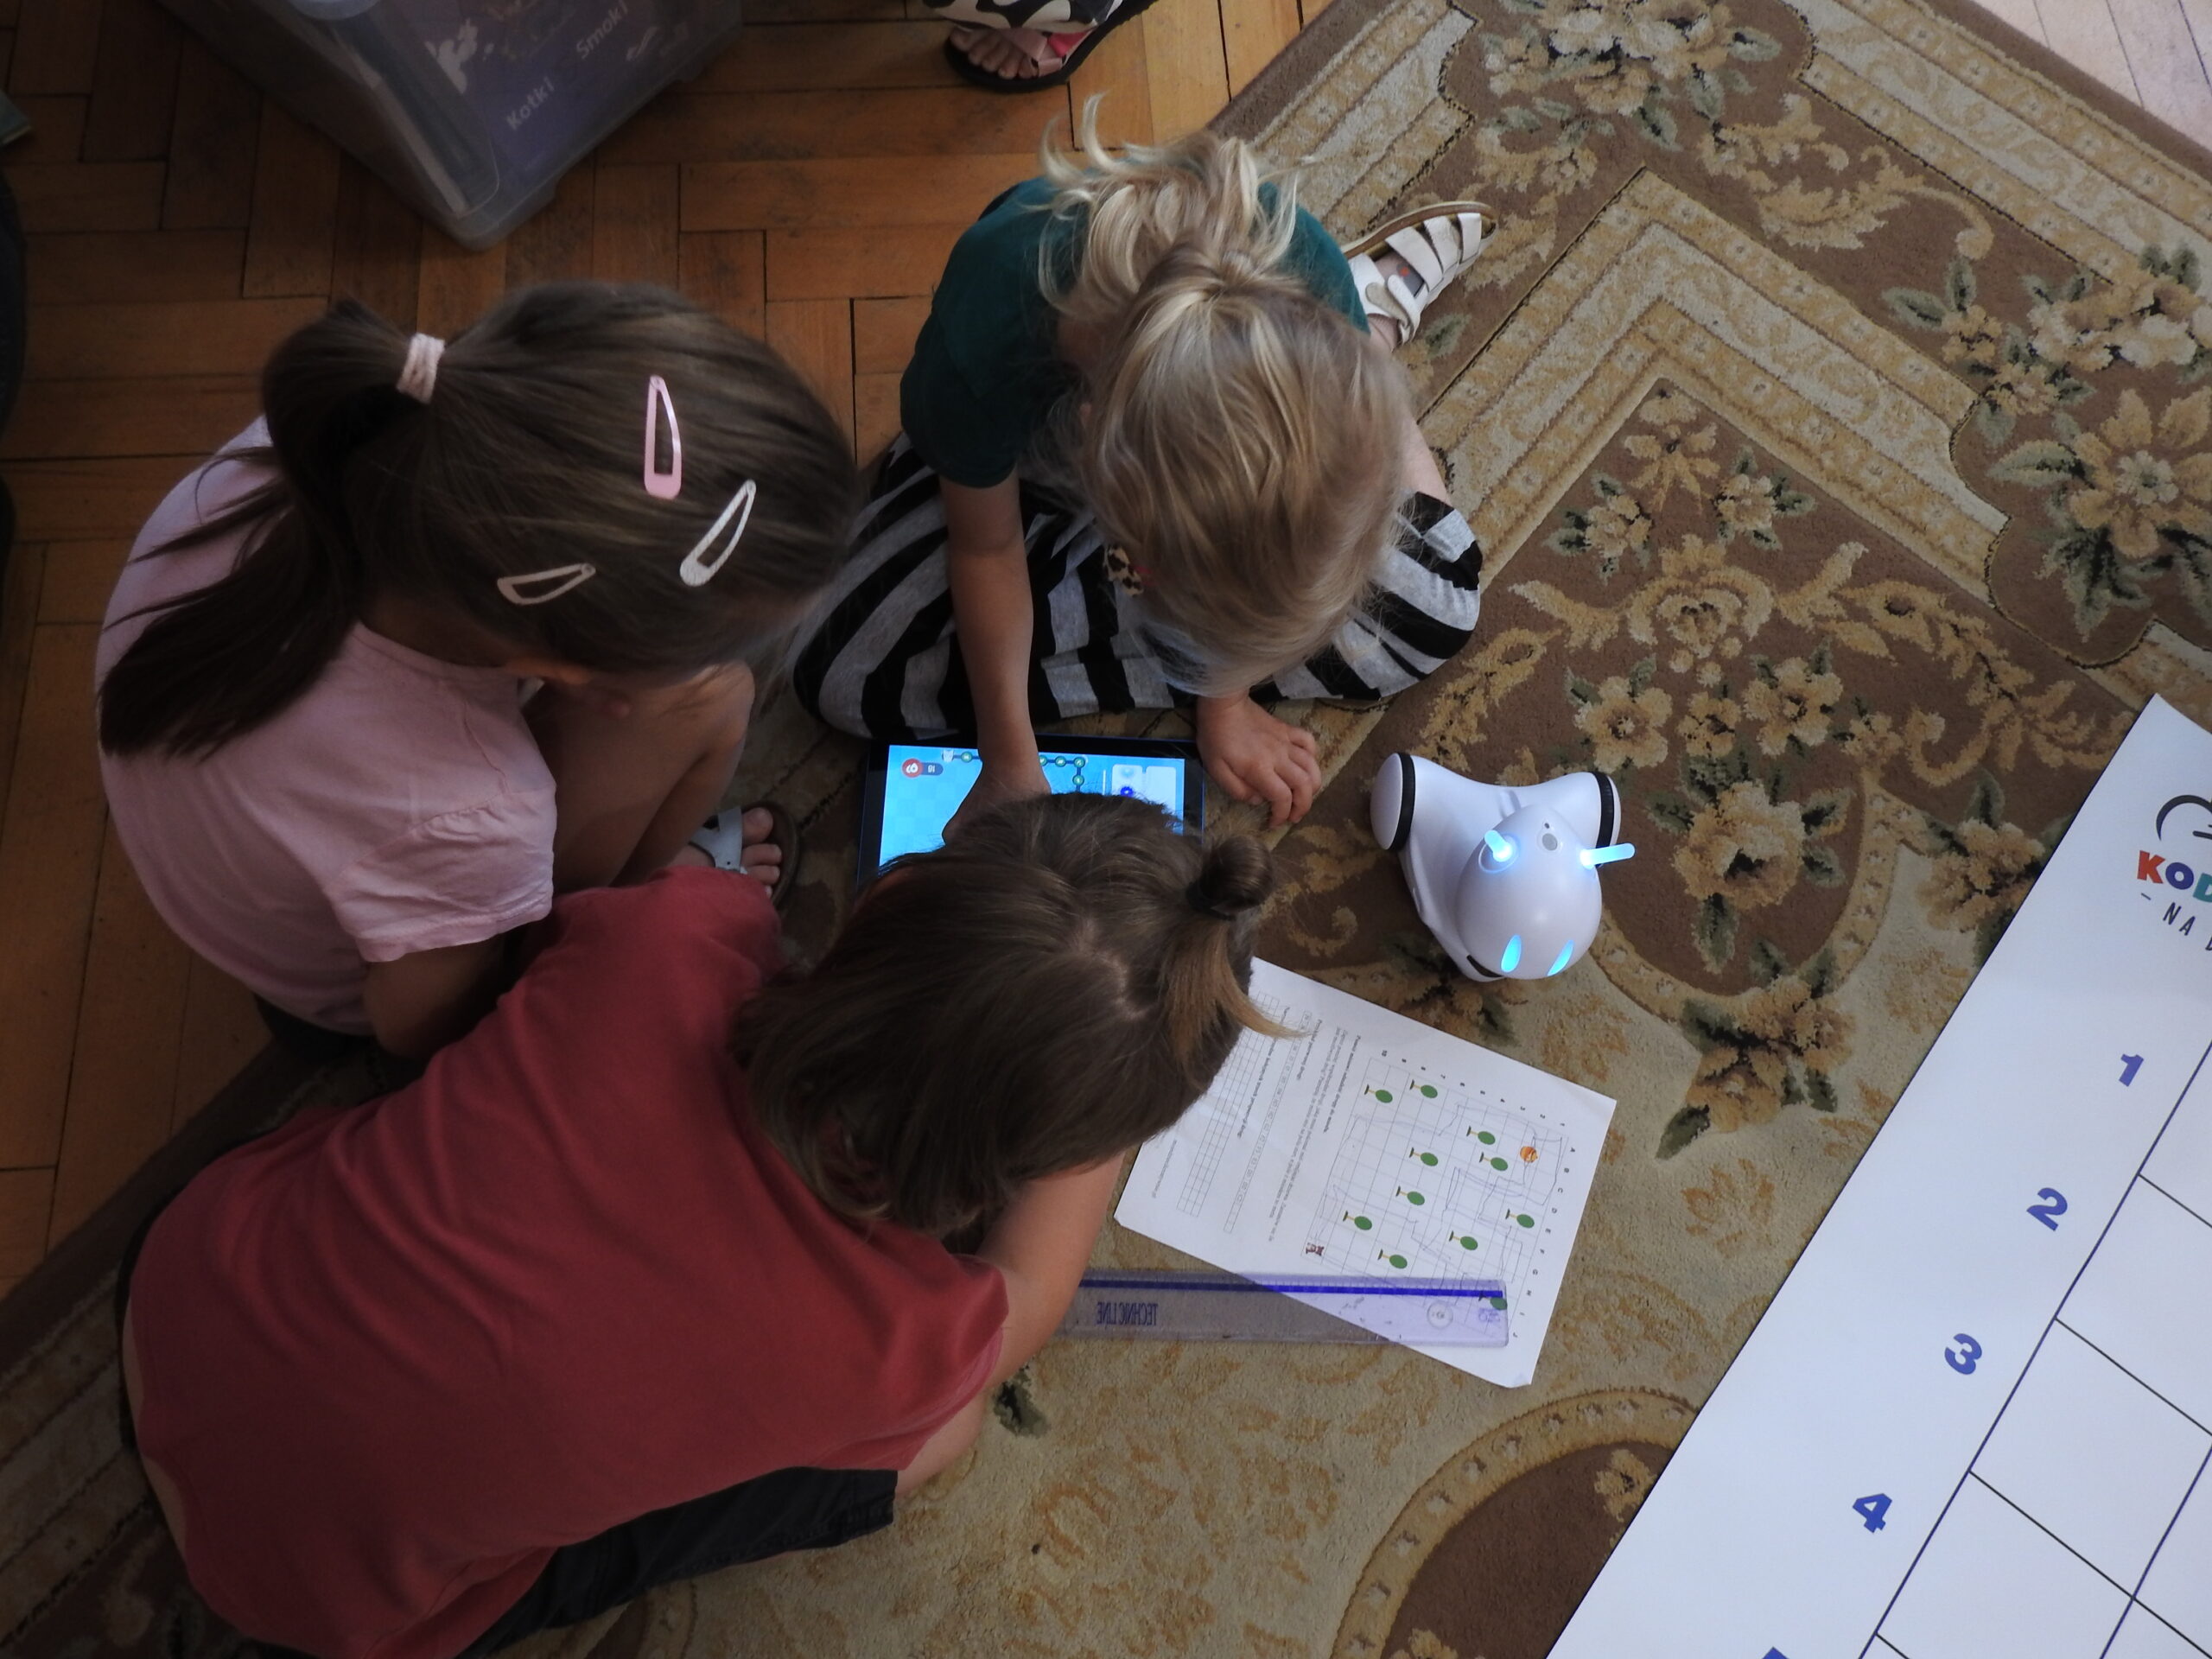 Troje dzieci siedzi na dywanie i jest pochylonych nad włączonym tabletem. Obok nich znajduje się robot do kodowania oraz kartka A4 z nadrukowaną instrukcją do kodowania. Na kartce widać planszę podzieloną na kwadraty. W kilku kwadratach znajdują się zielone i żółte kółeczka. 